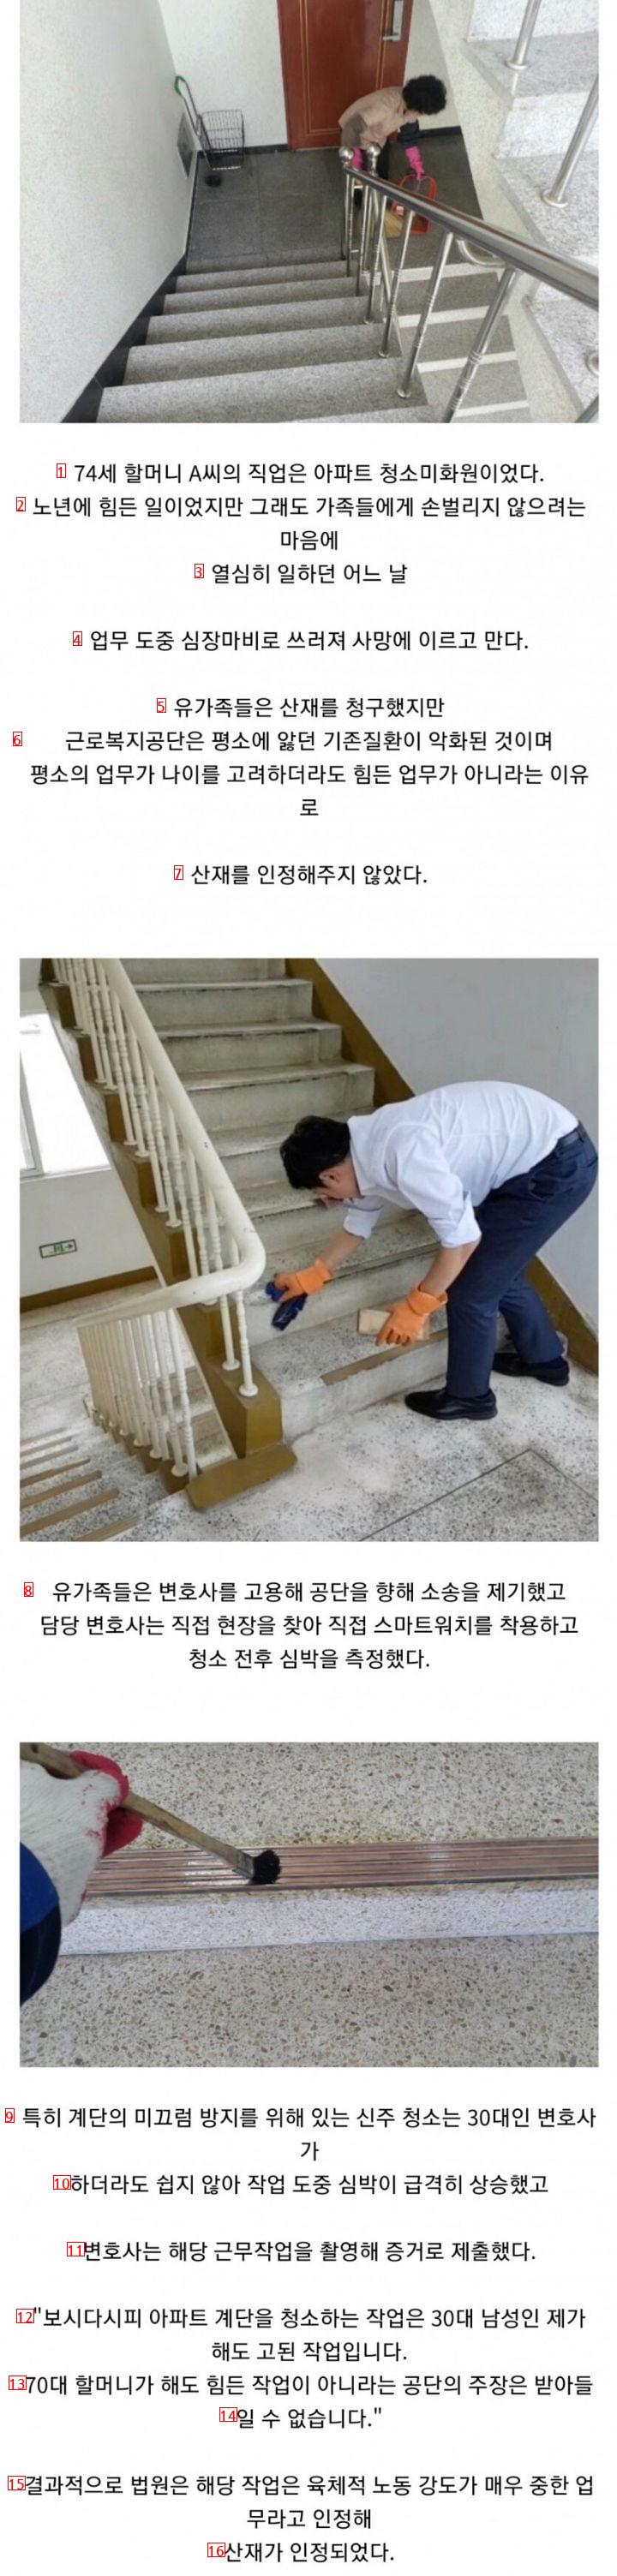 弁護士が階段掃除をした理由 jpg